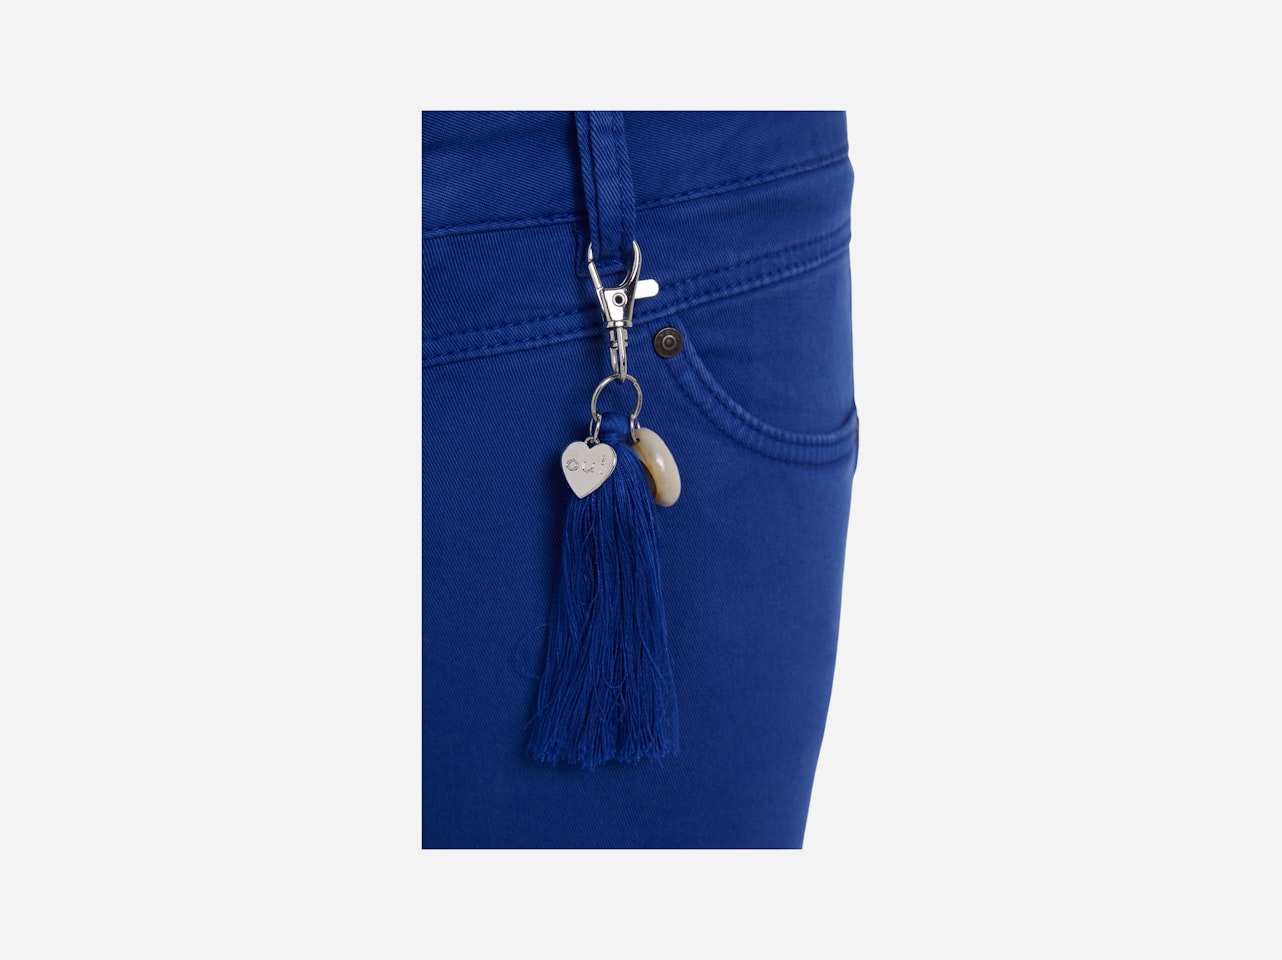 Bild 9 von Denim The Newport with shortened leg length in mazarine blue | Oui